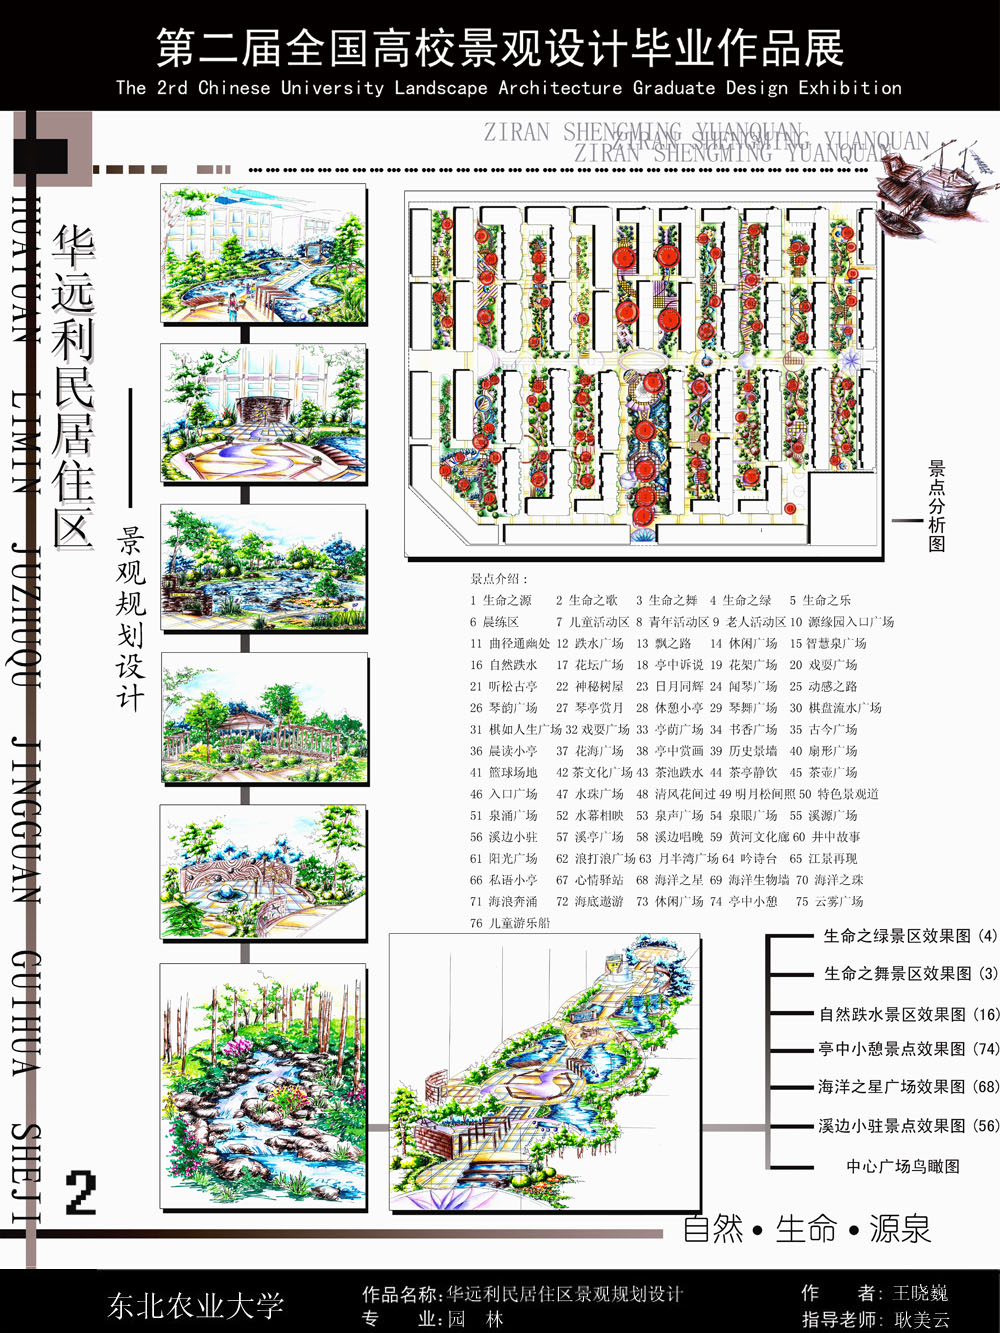 华远利民居住区景观规划设计-2